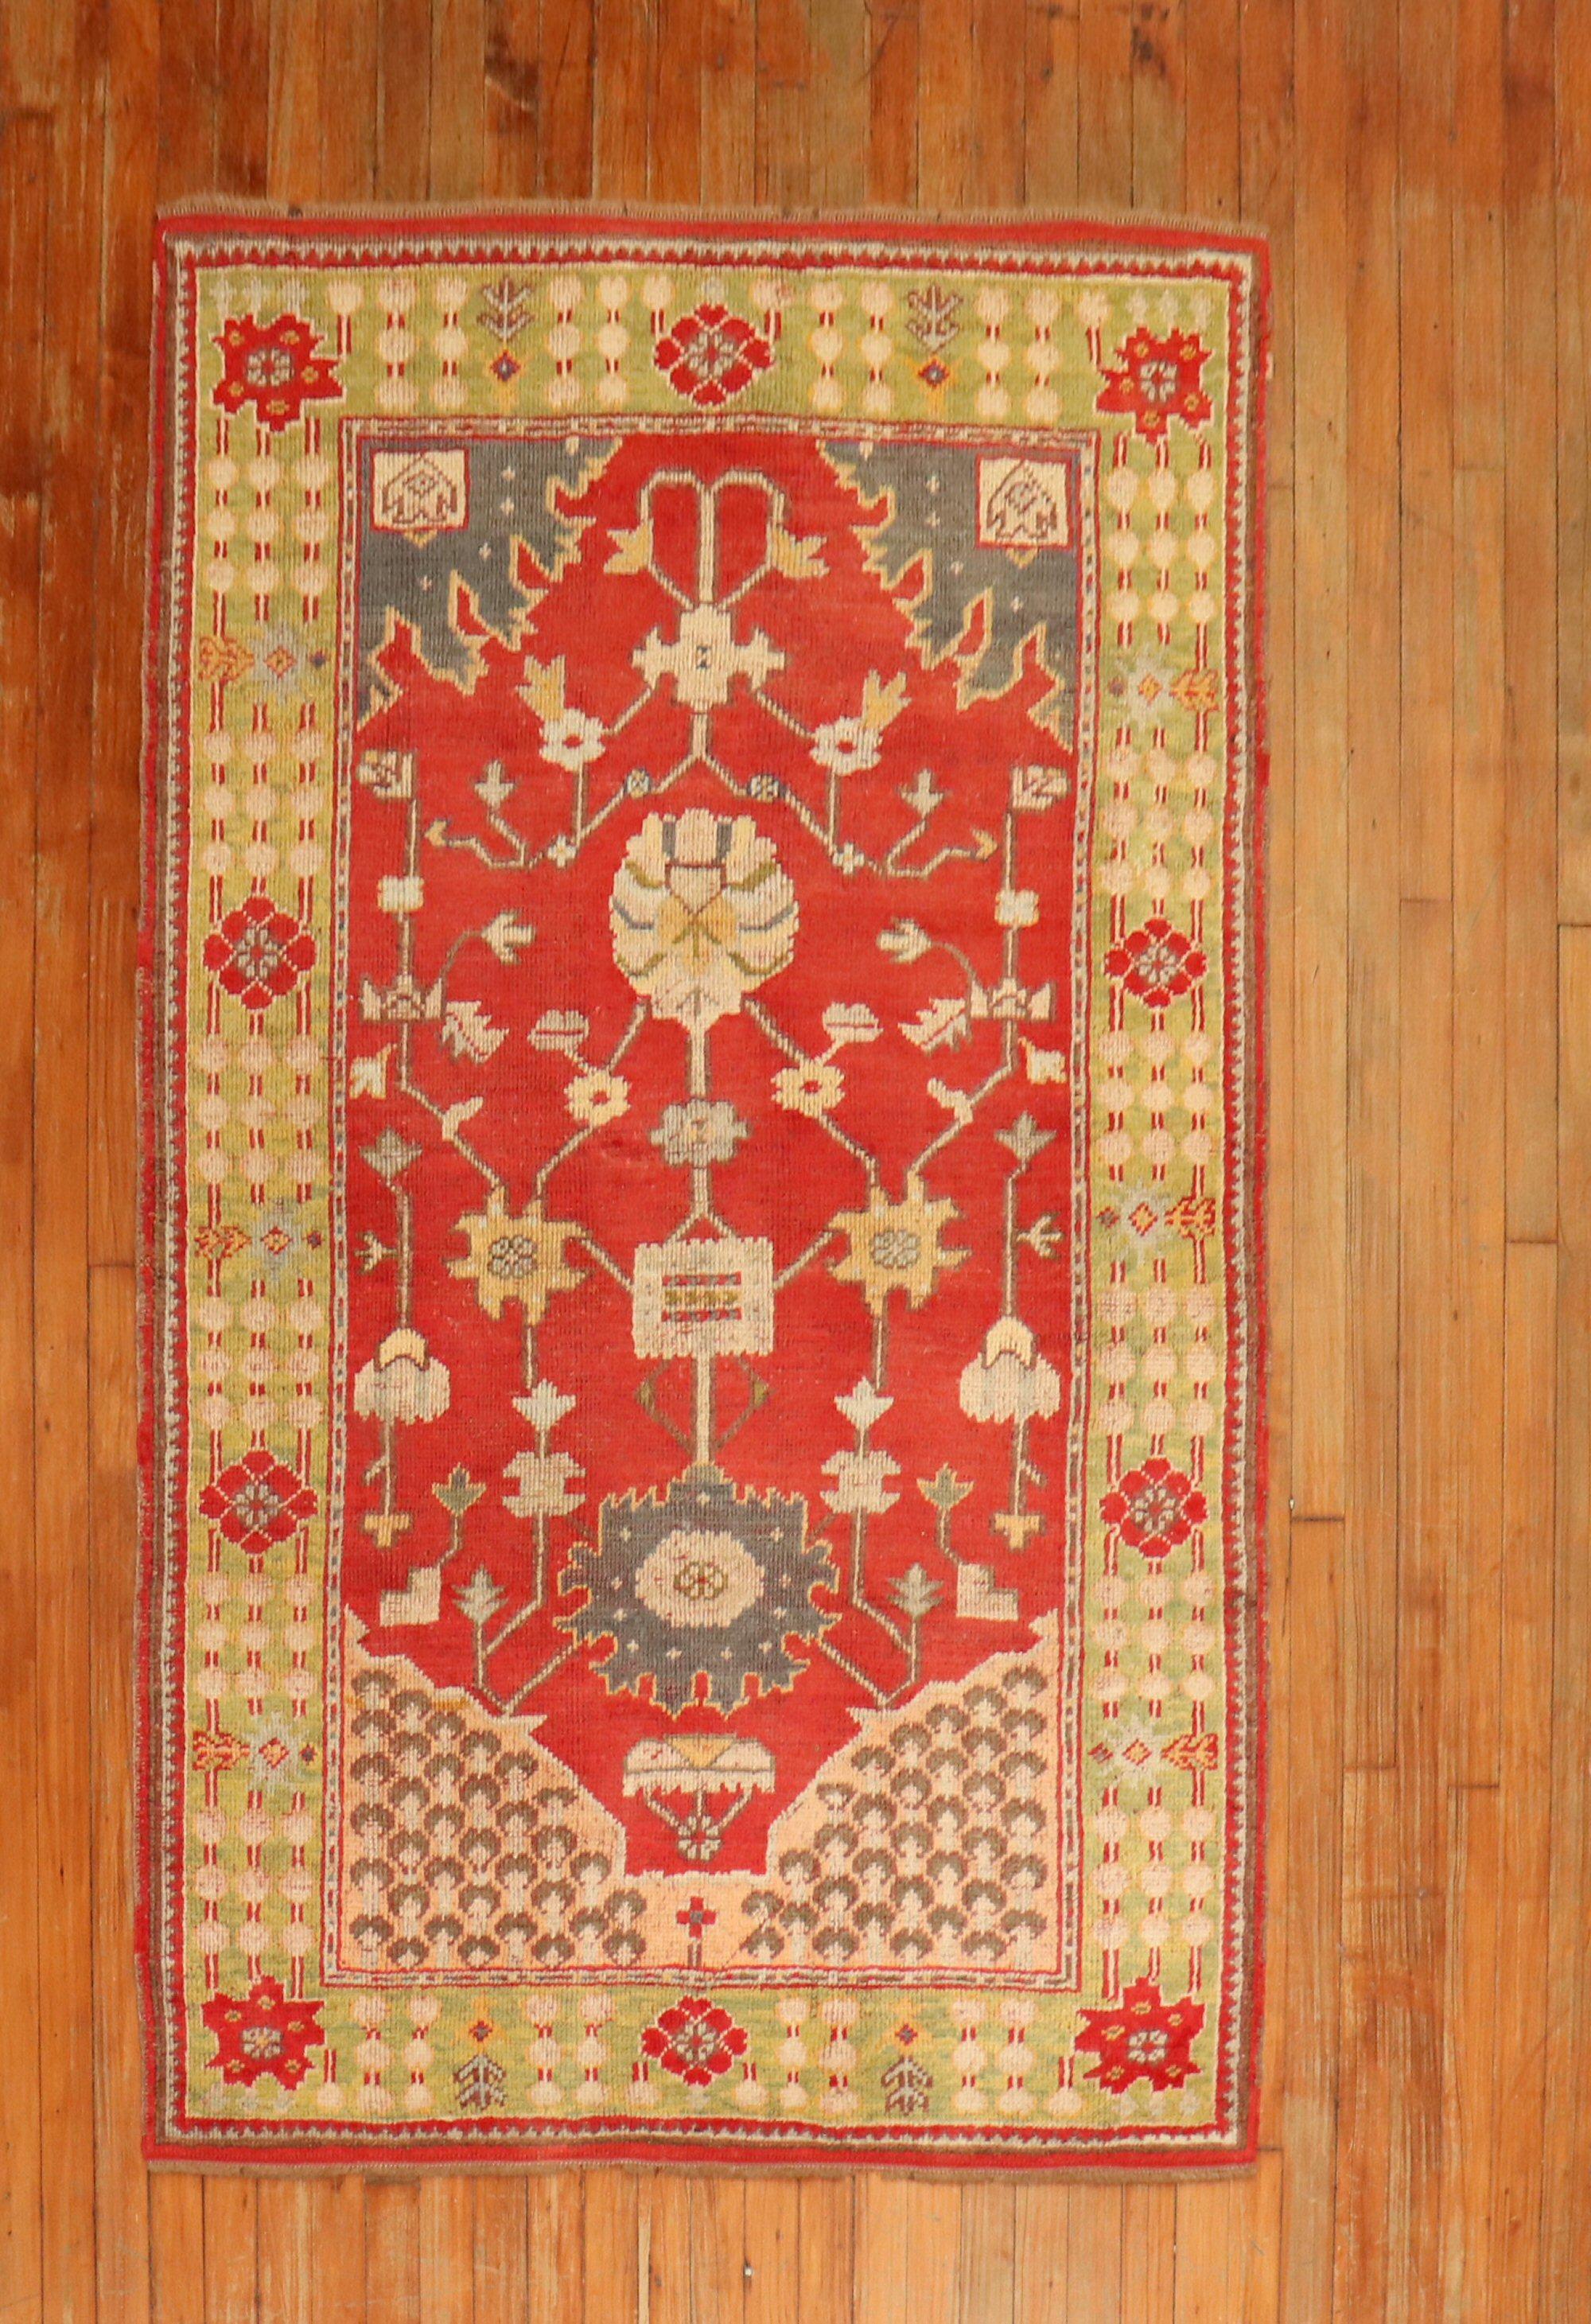 Charmant tapis turc oushak du début du 20e siècle, coloré, avec un champ rouge vif et une bordure vert citron.

Mesures : 3'11